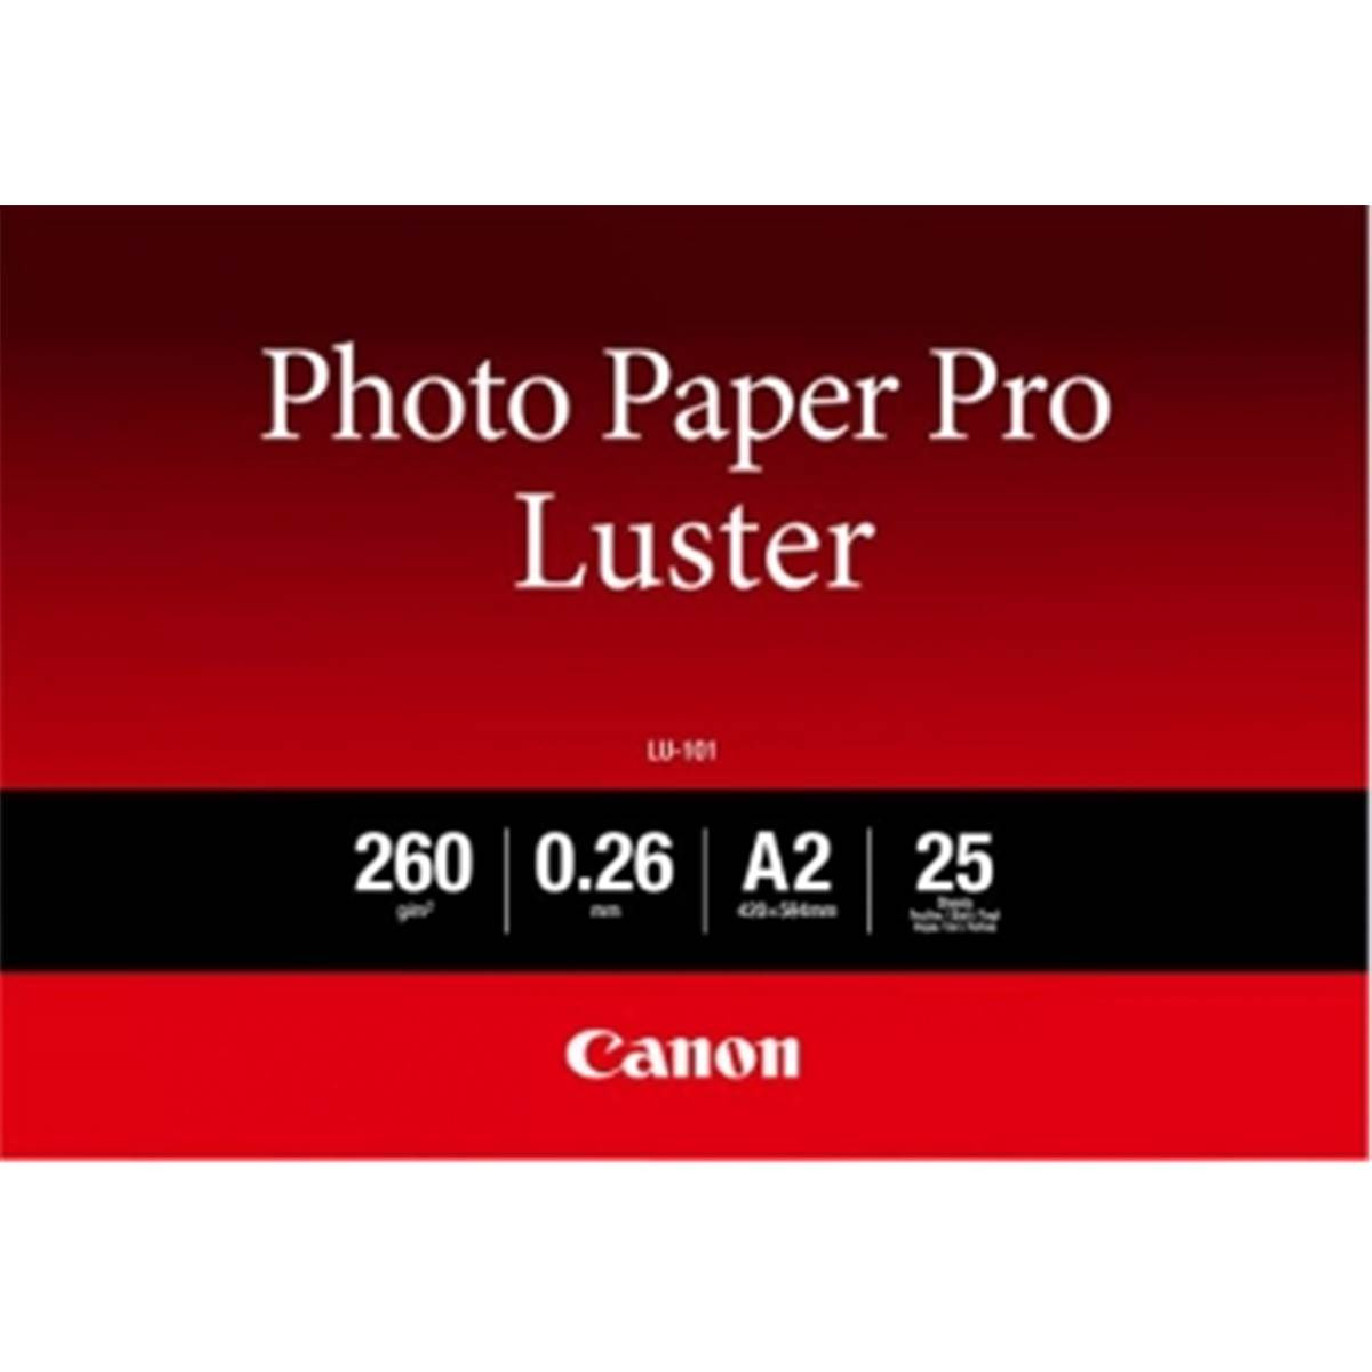 Canon Papier Photo Pro Luster 260g A2 25f - Prophot